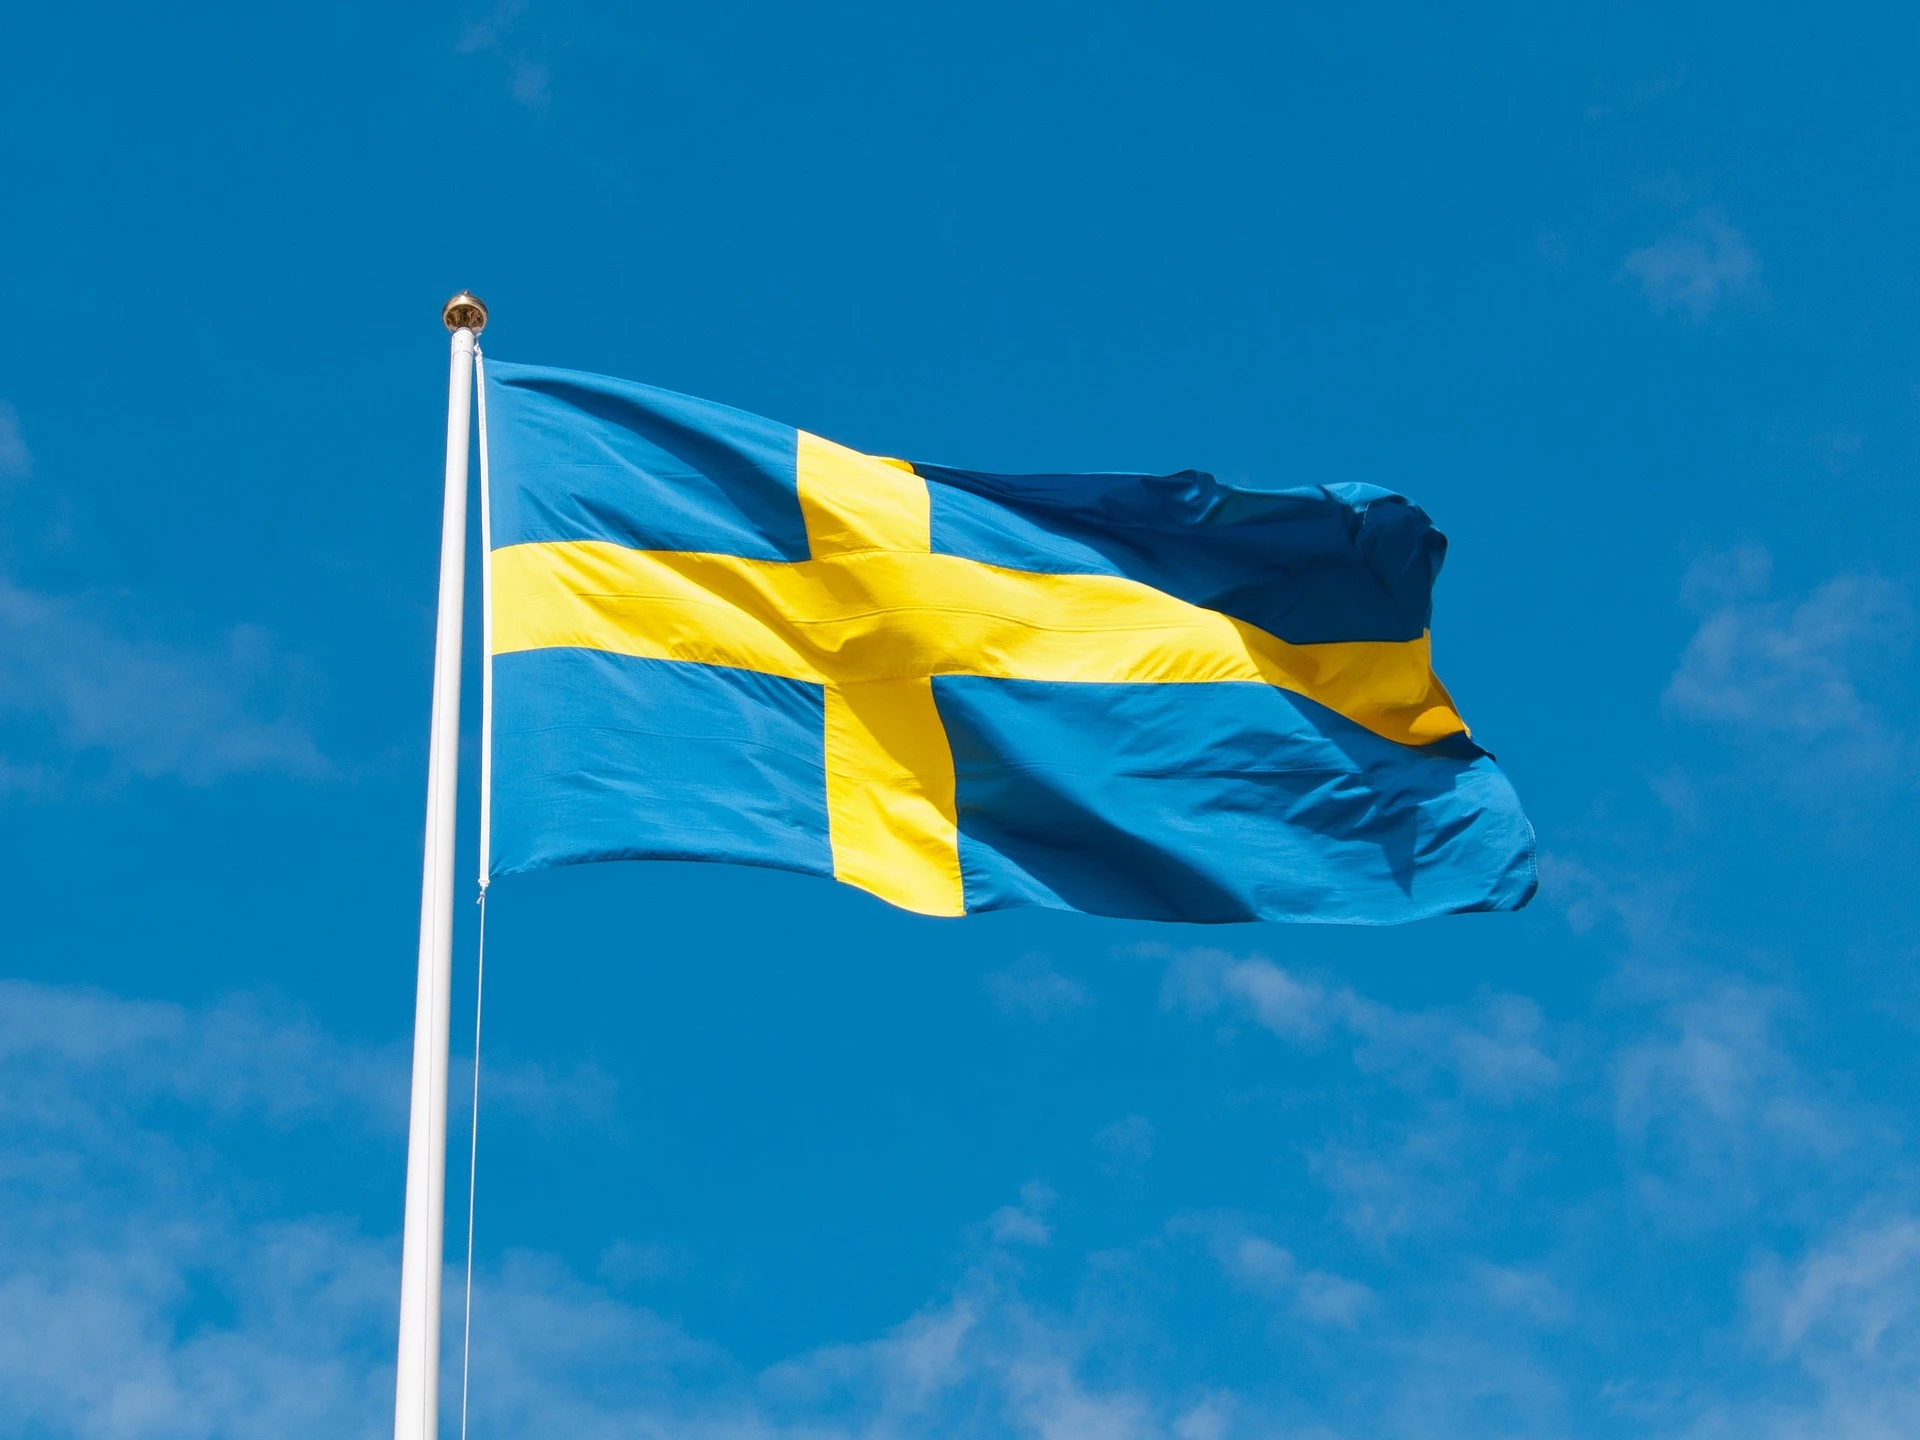 Prieš Lietuvos ambasadą Švedijoje įvykdytas išpuolis